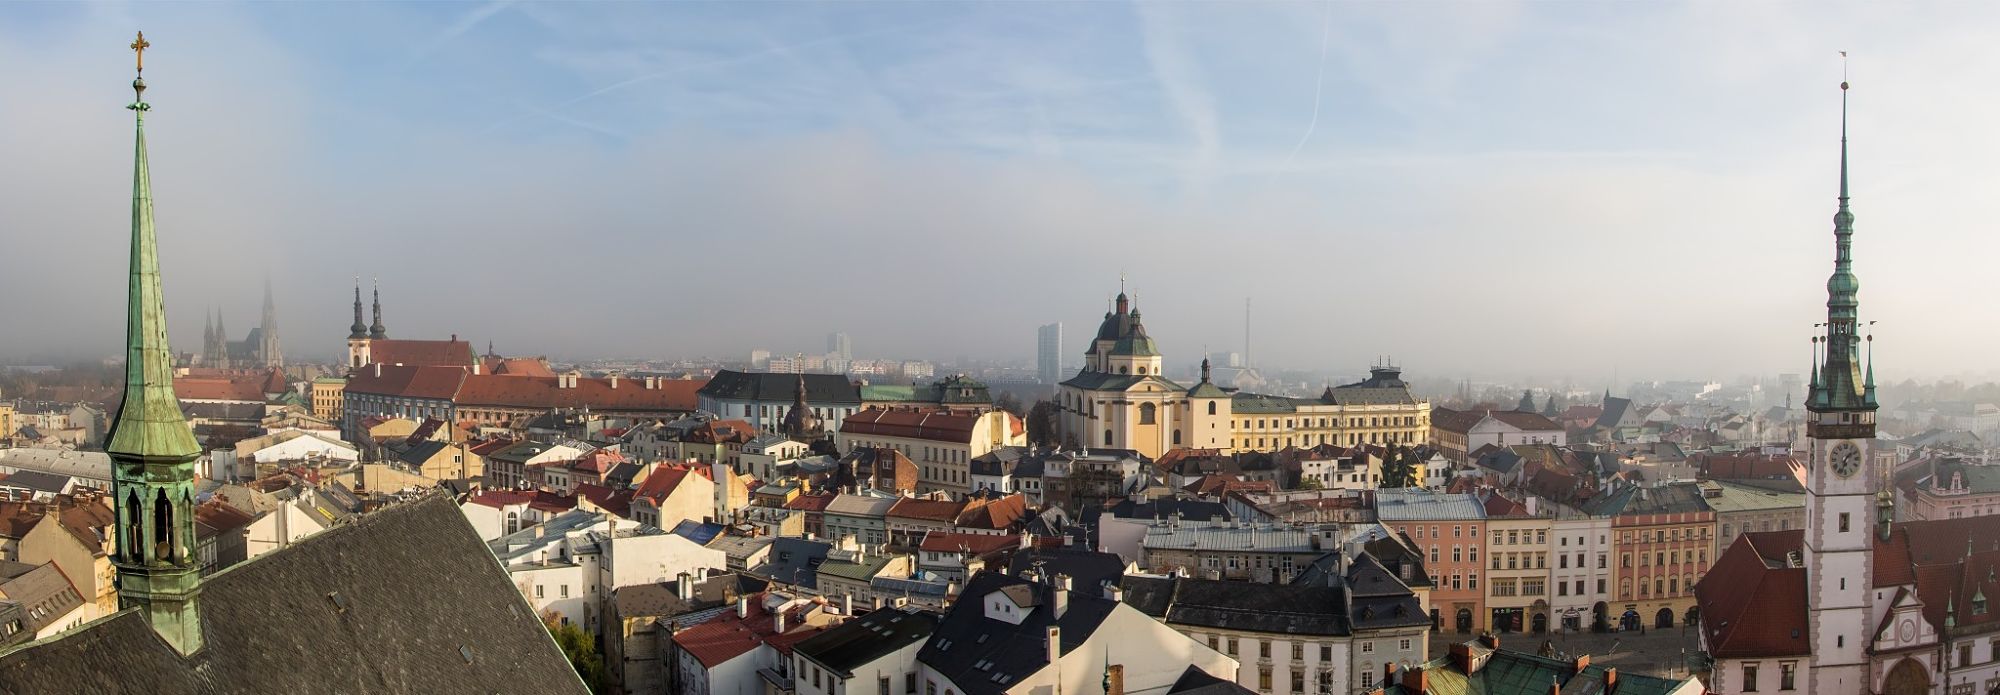 City of Olomouc in November